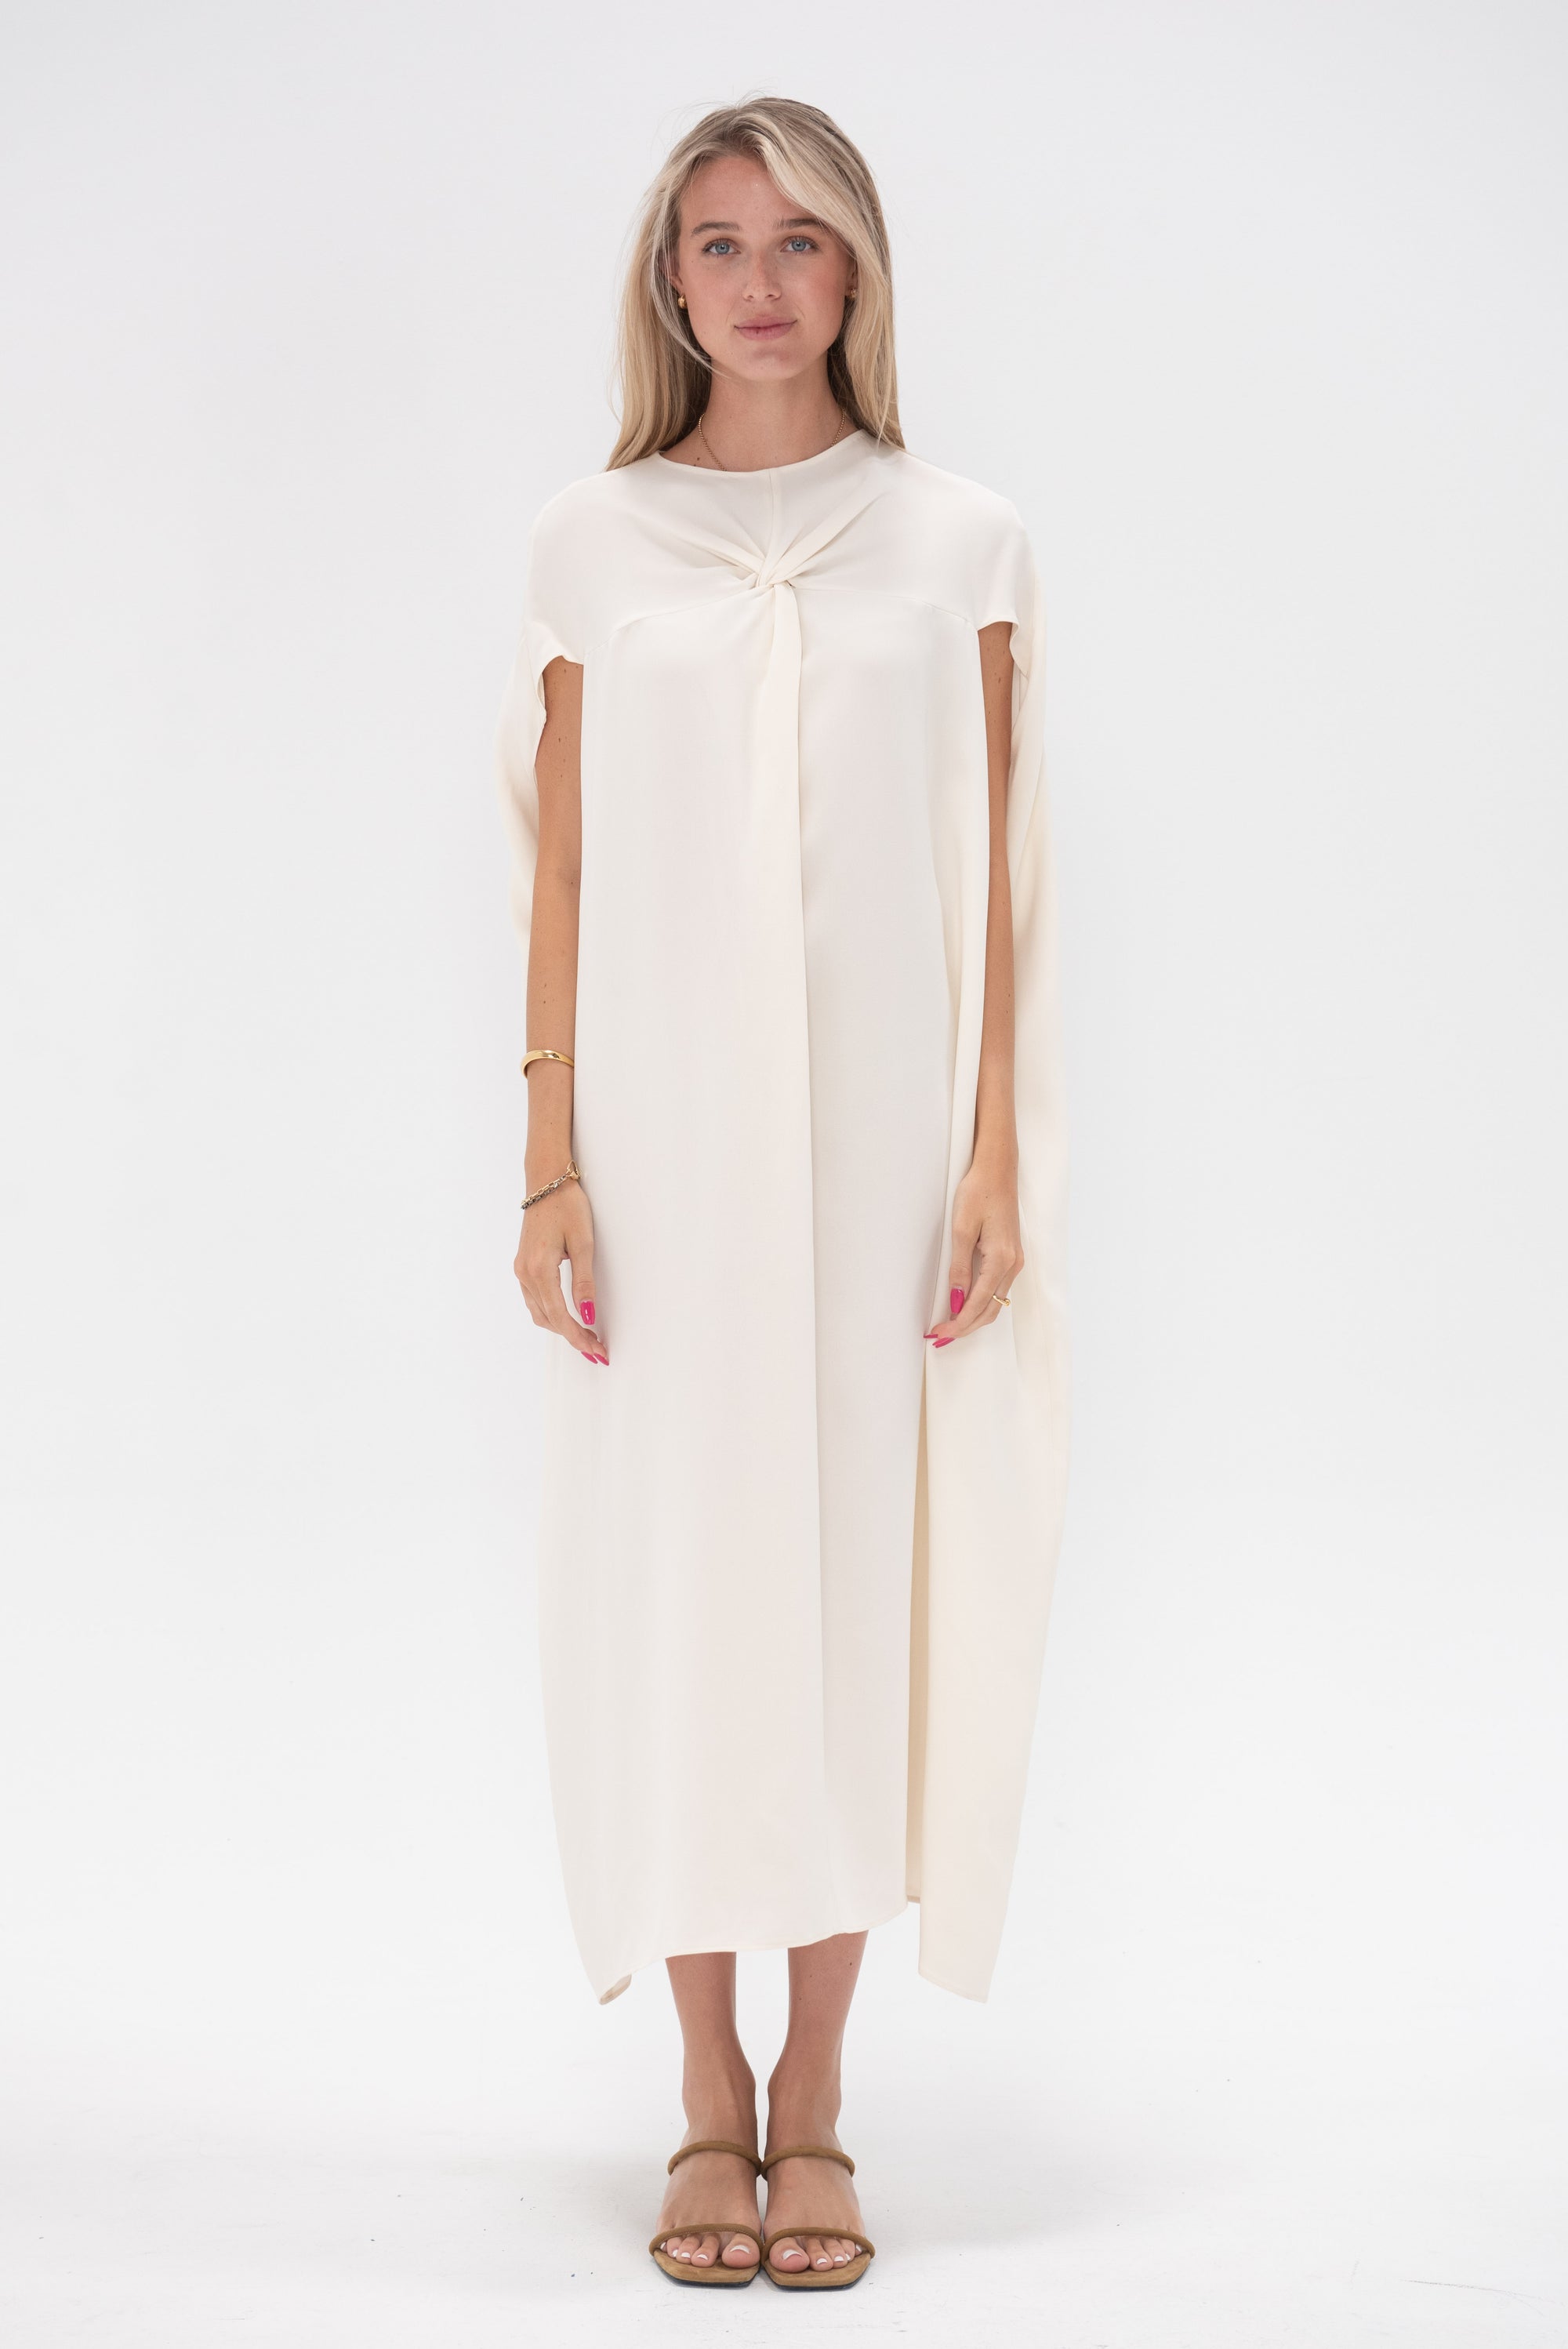 HEIRLOME - Paloma Dress, Ivory